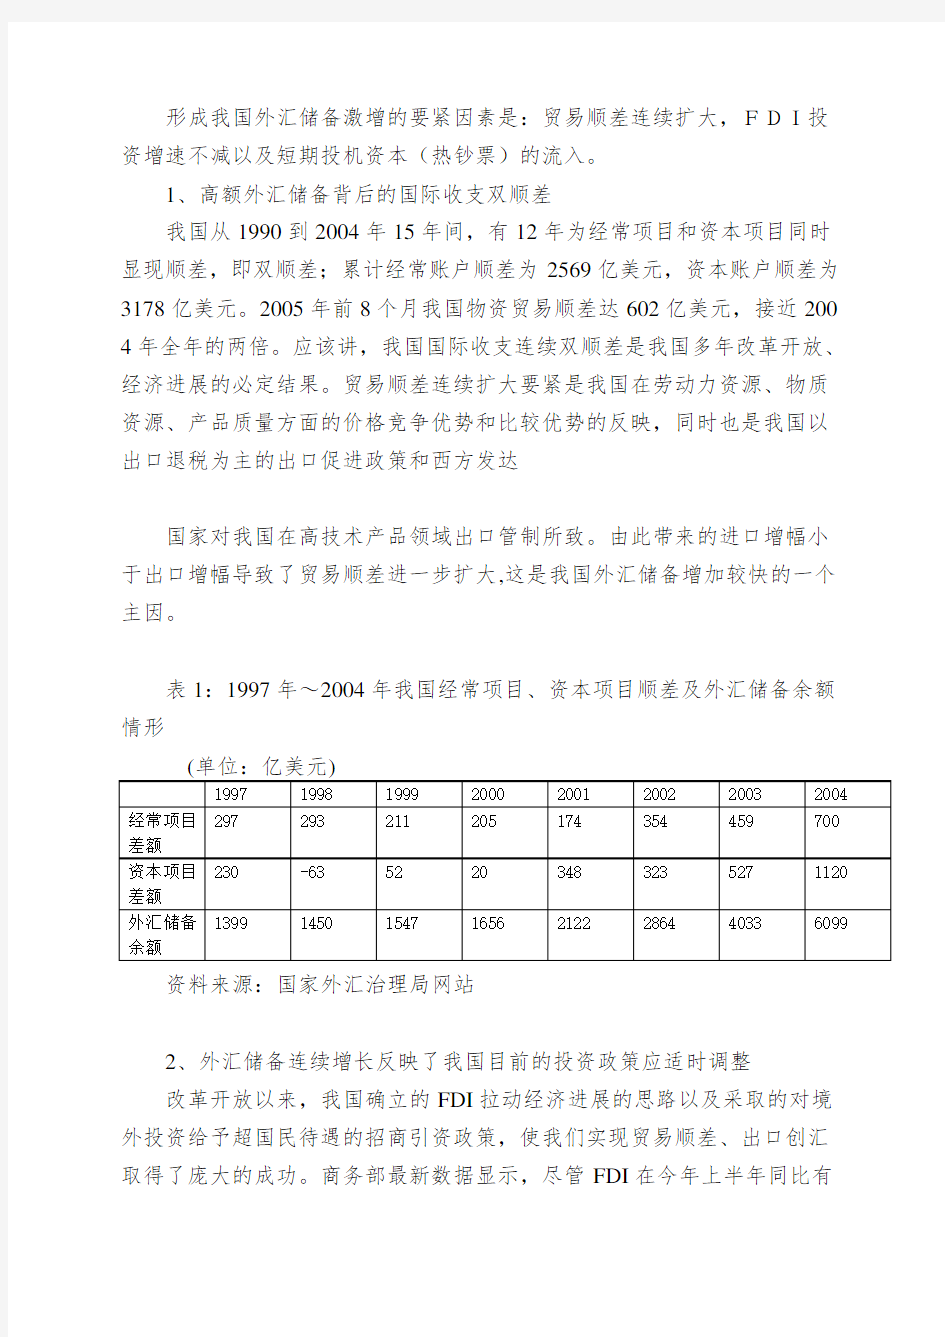 中国外汇储备状况诊断报告